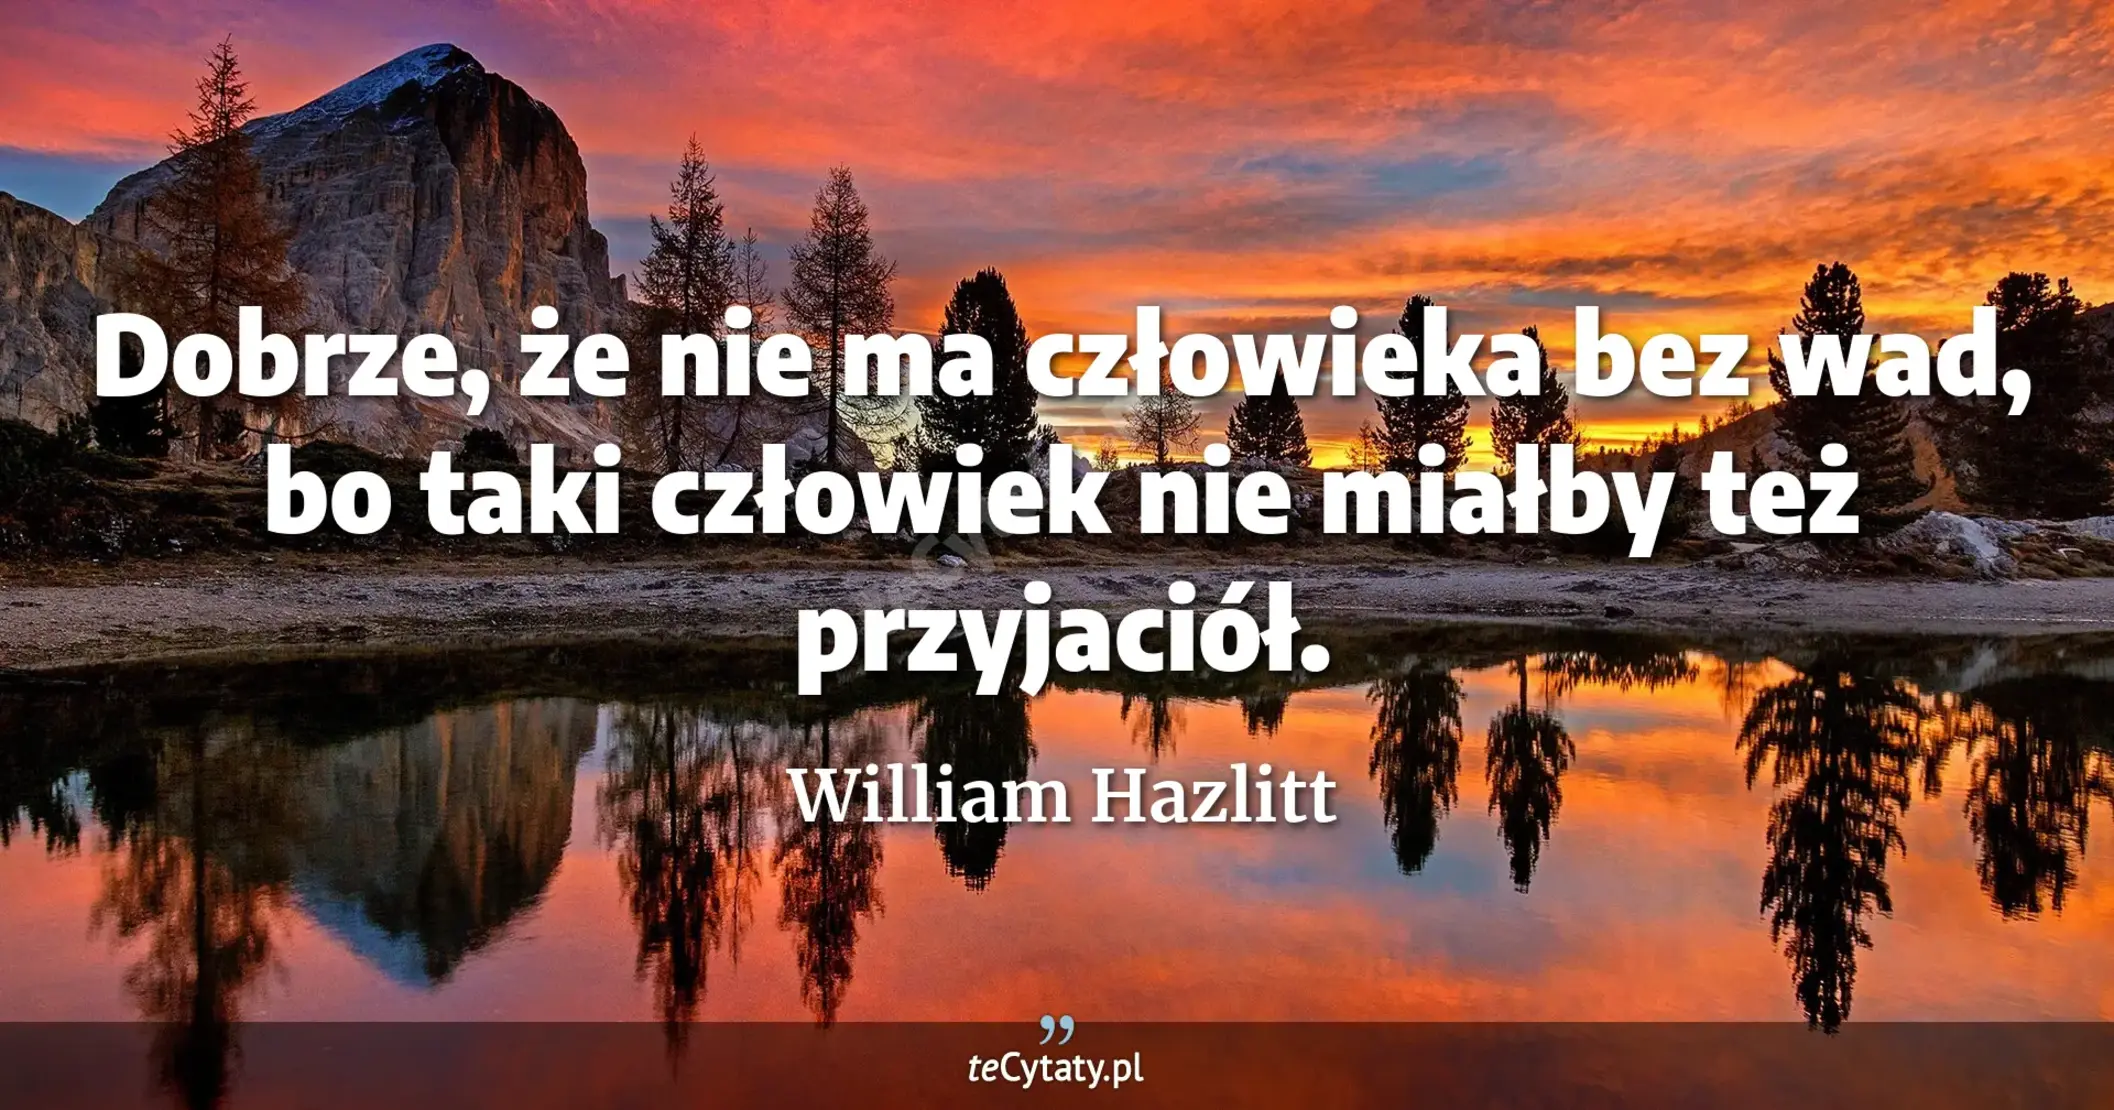 Dobrze, że nie ma człowieka bez wad, bo taki człowiek nie miałby też przyjaciół. - William Hazlitt